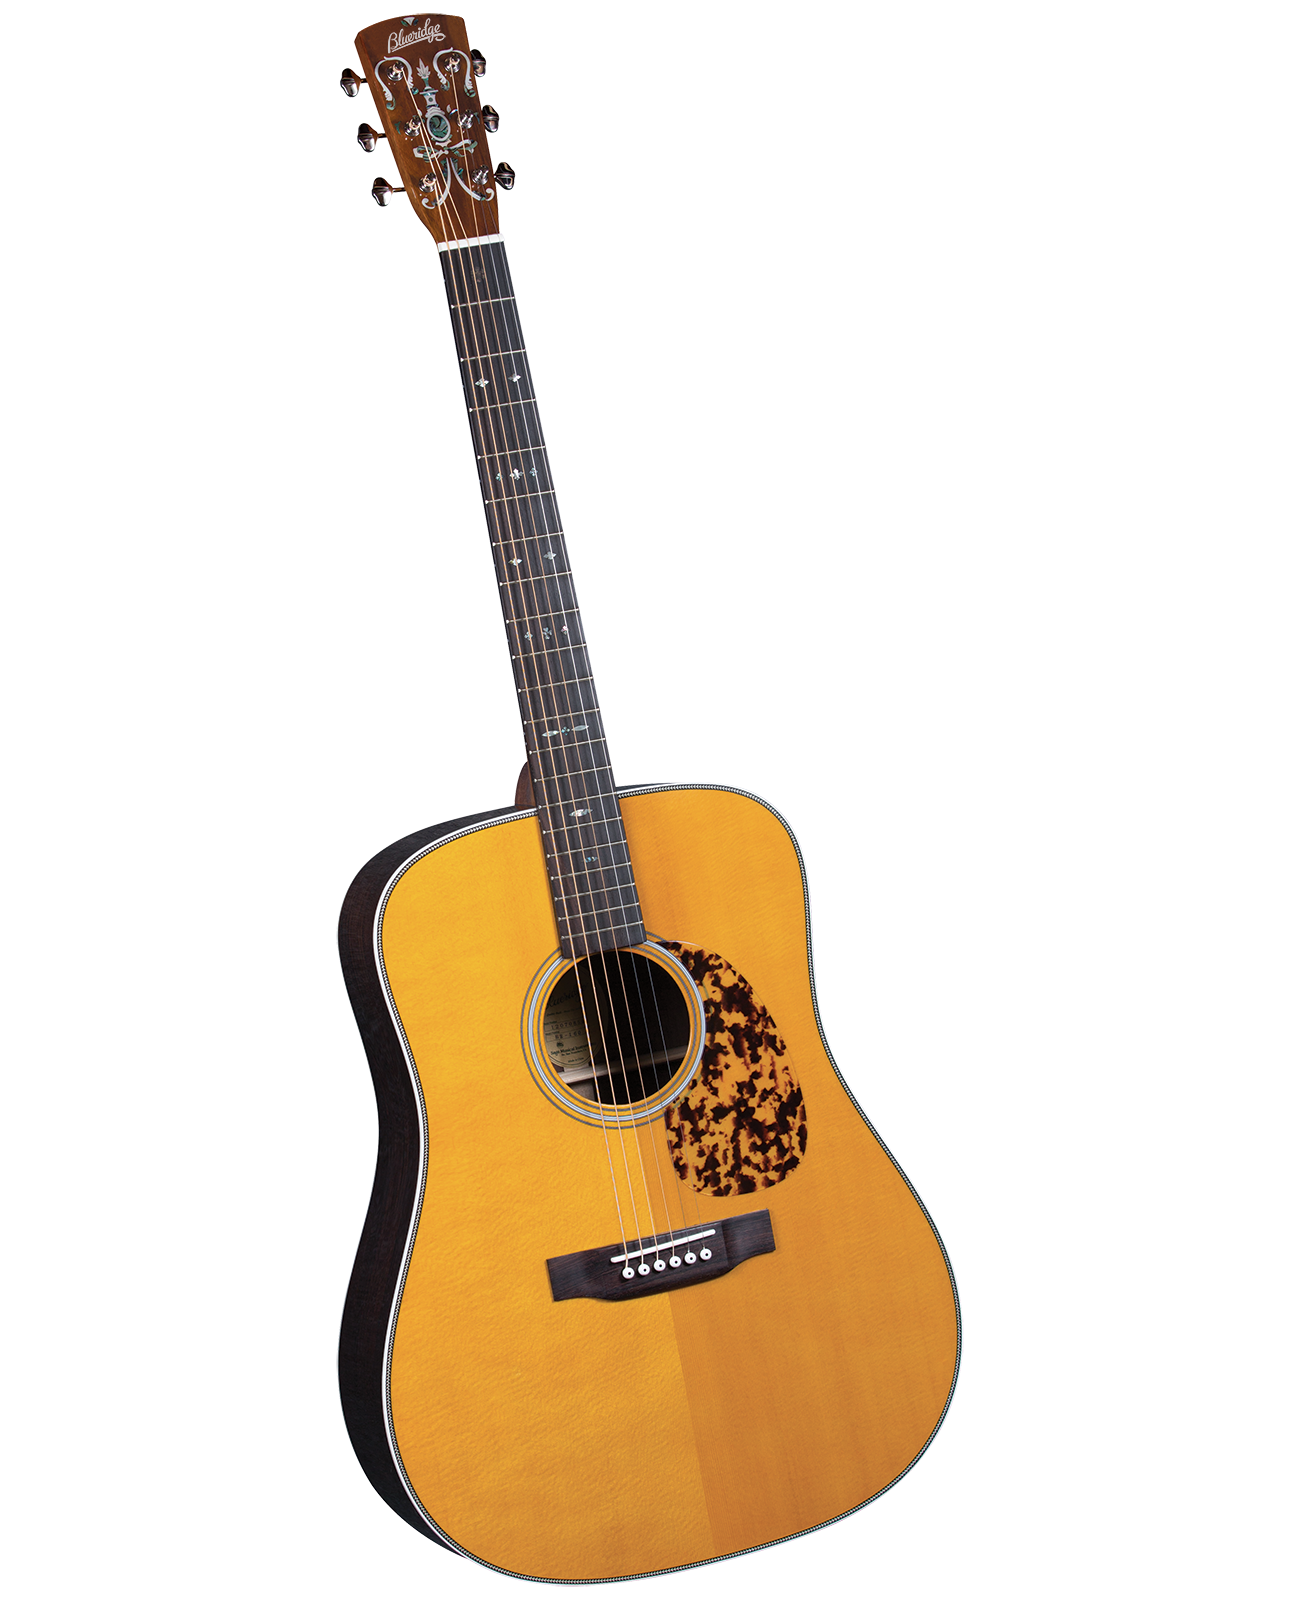 Blueridge BR-160 Acoustic Guitar Review 2023